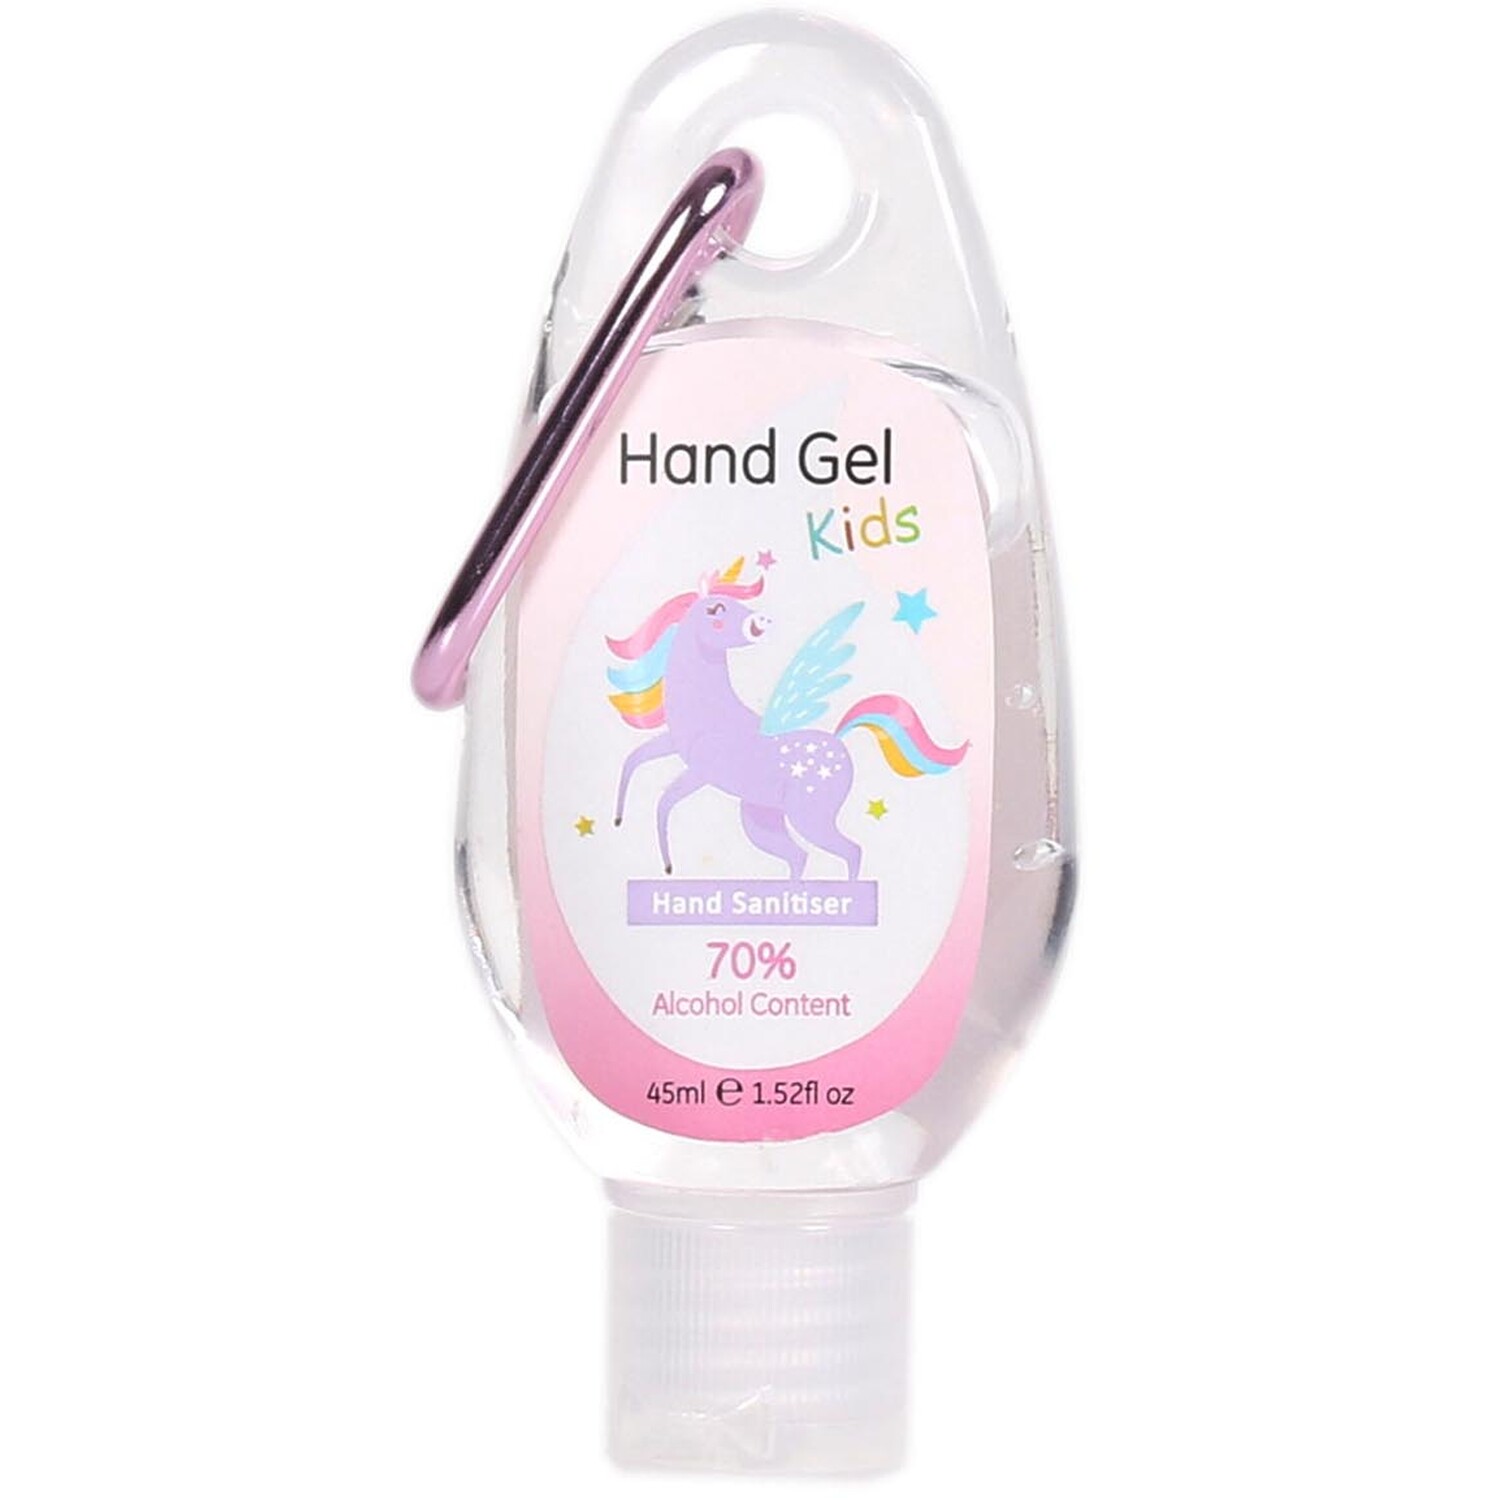 Kids Hand Gel Hand Sanitiser 45ml Image 2